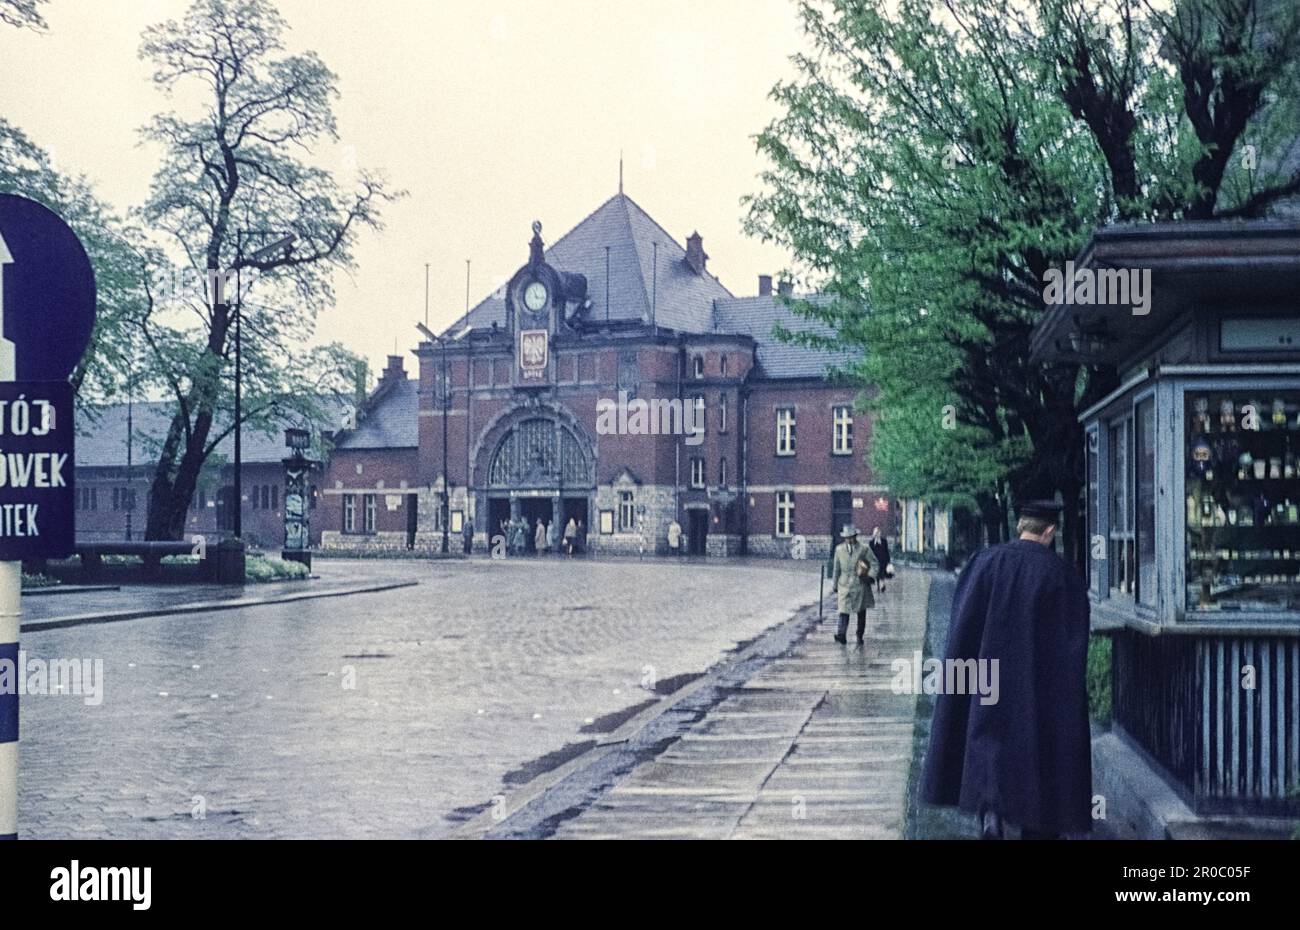 Gmach Dworca Głównego, Opole Główne railway station, the main railway station on a rainy day, city centre Opole, Opole Voivodeship, Poland, 1962 Stock Photo